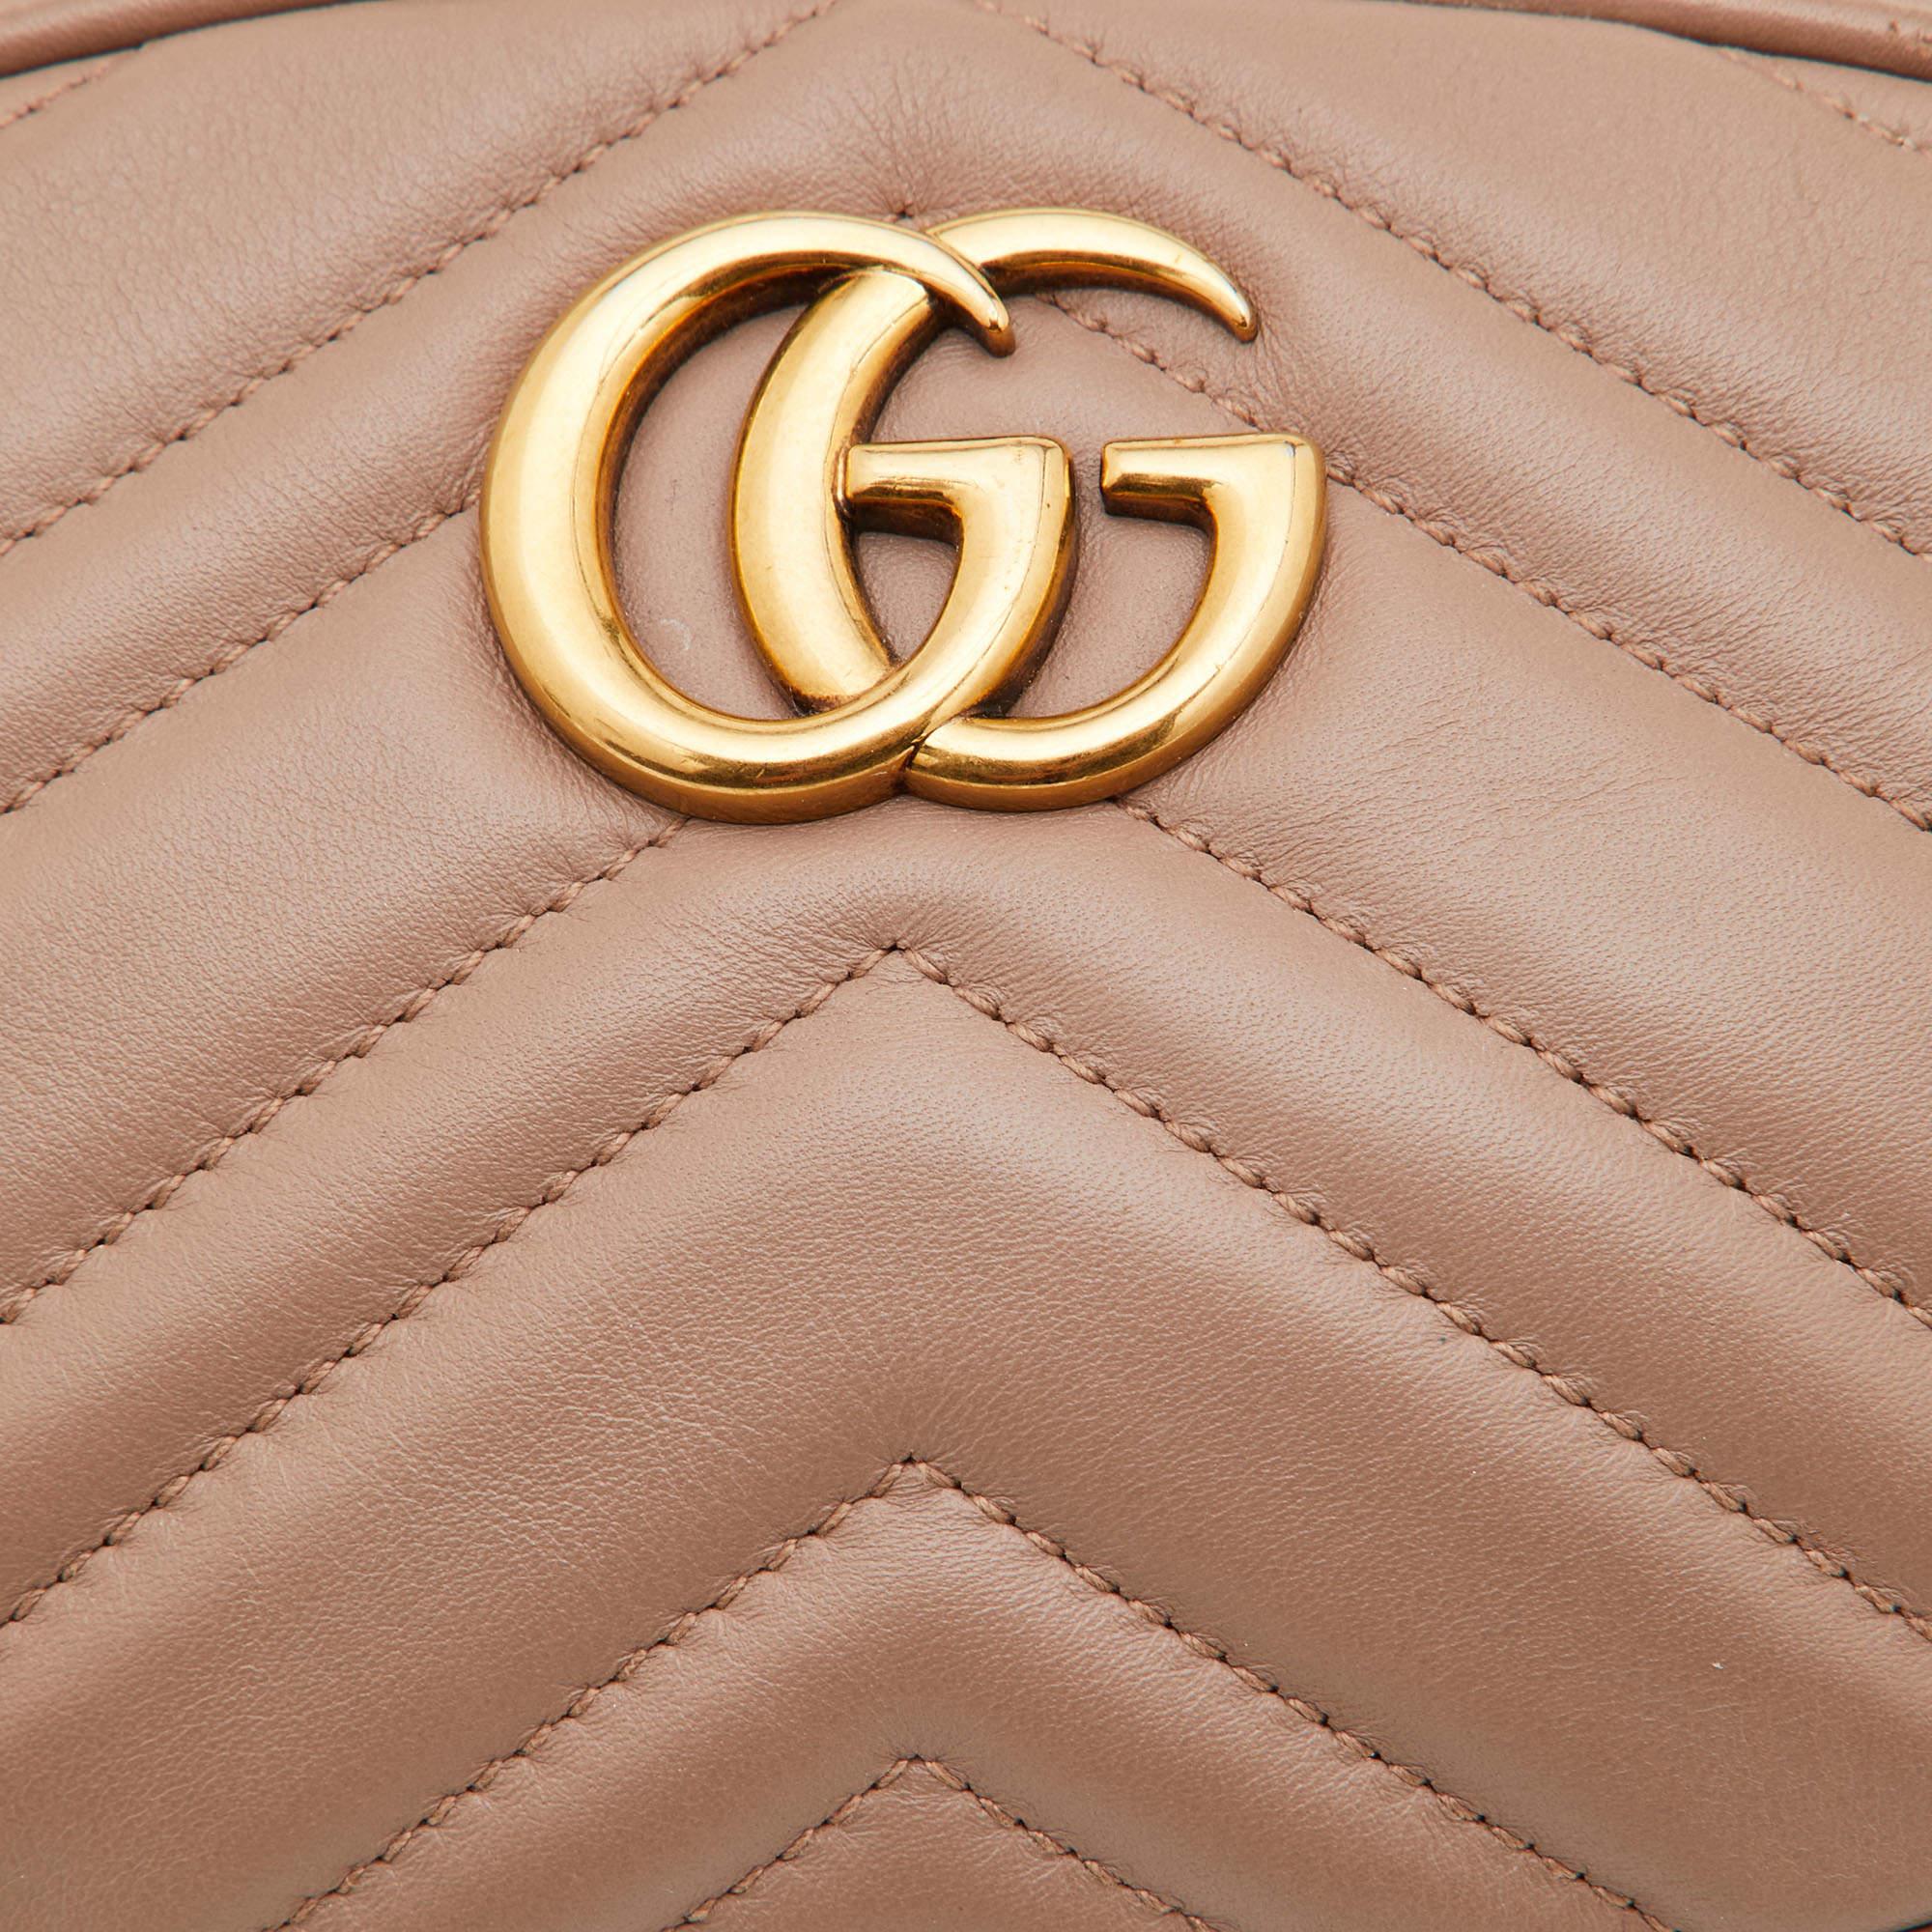 Gucci Beige Matelassé Leather GG Marmont Belt Bag 8